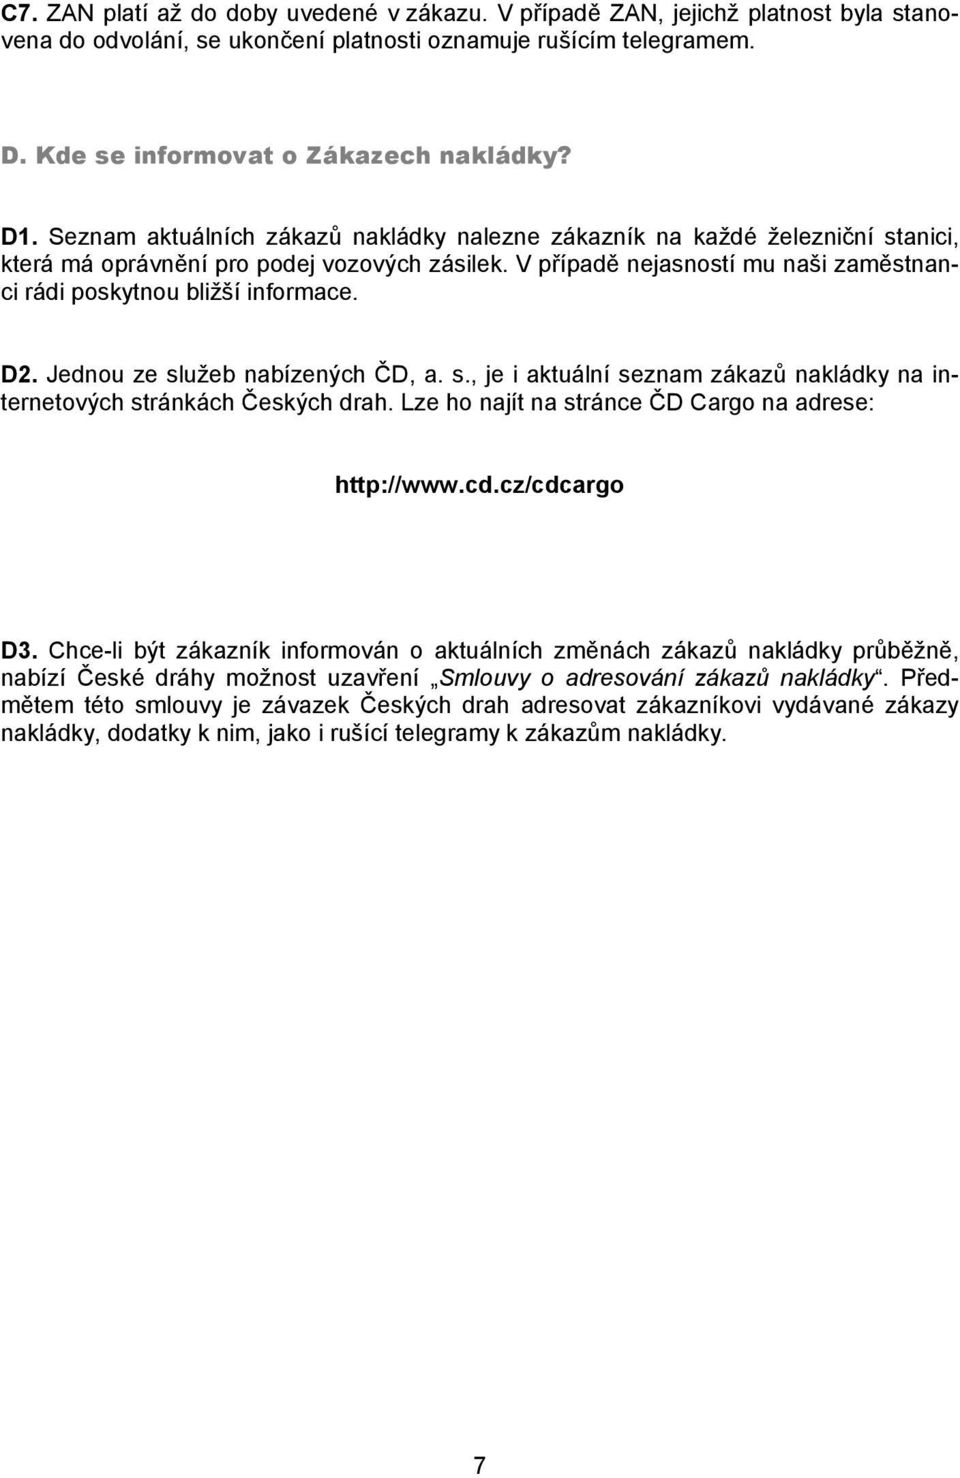 D2. Jednou ze služeb nabízených ČD, a. s., je i aktuální seznam zákazů nakládky na internetových stránkách Českých drah. Lze ho najít na stránce ČD Cargo na adrese: http://www.cd.cz/cdcargo D3.